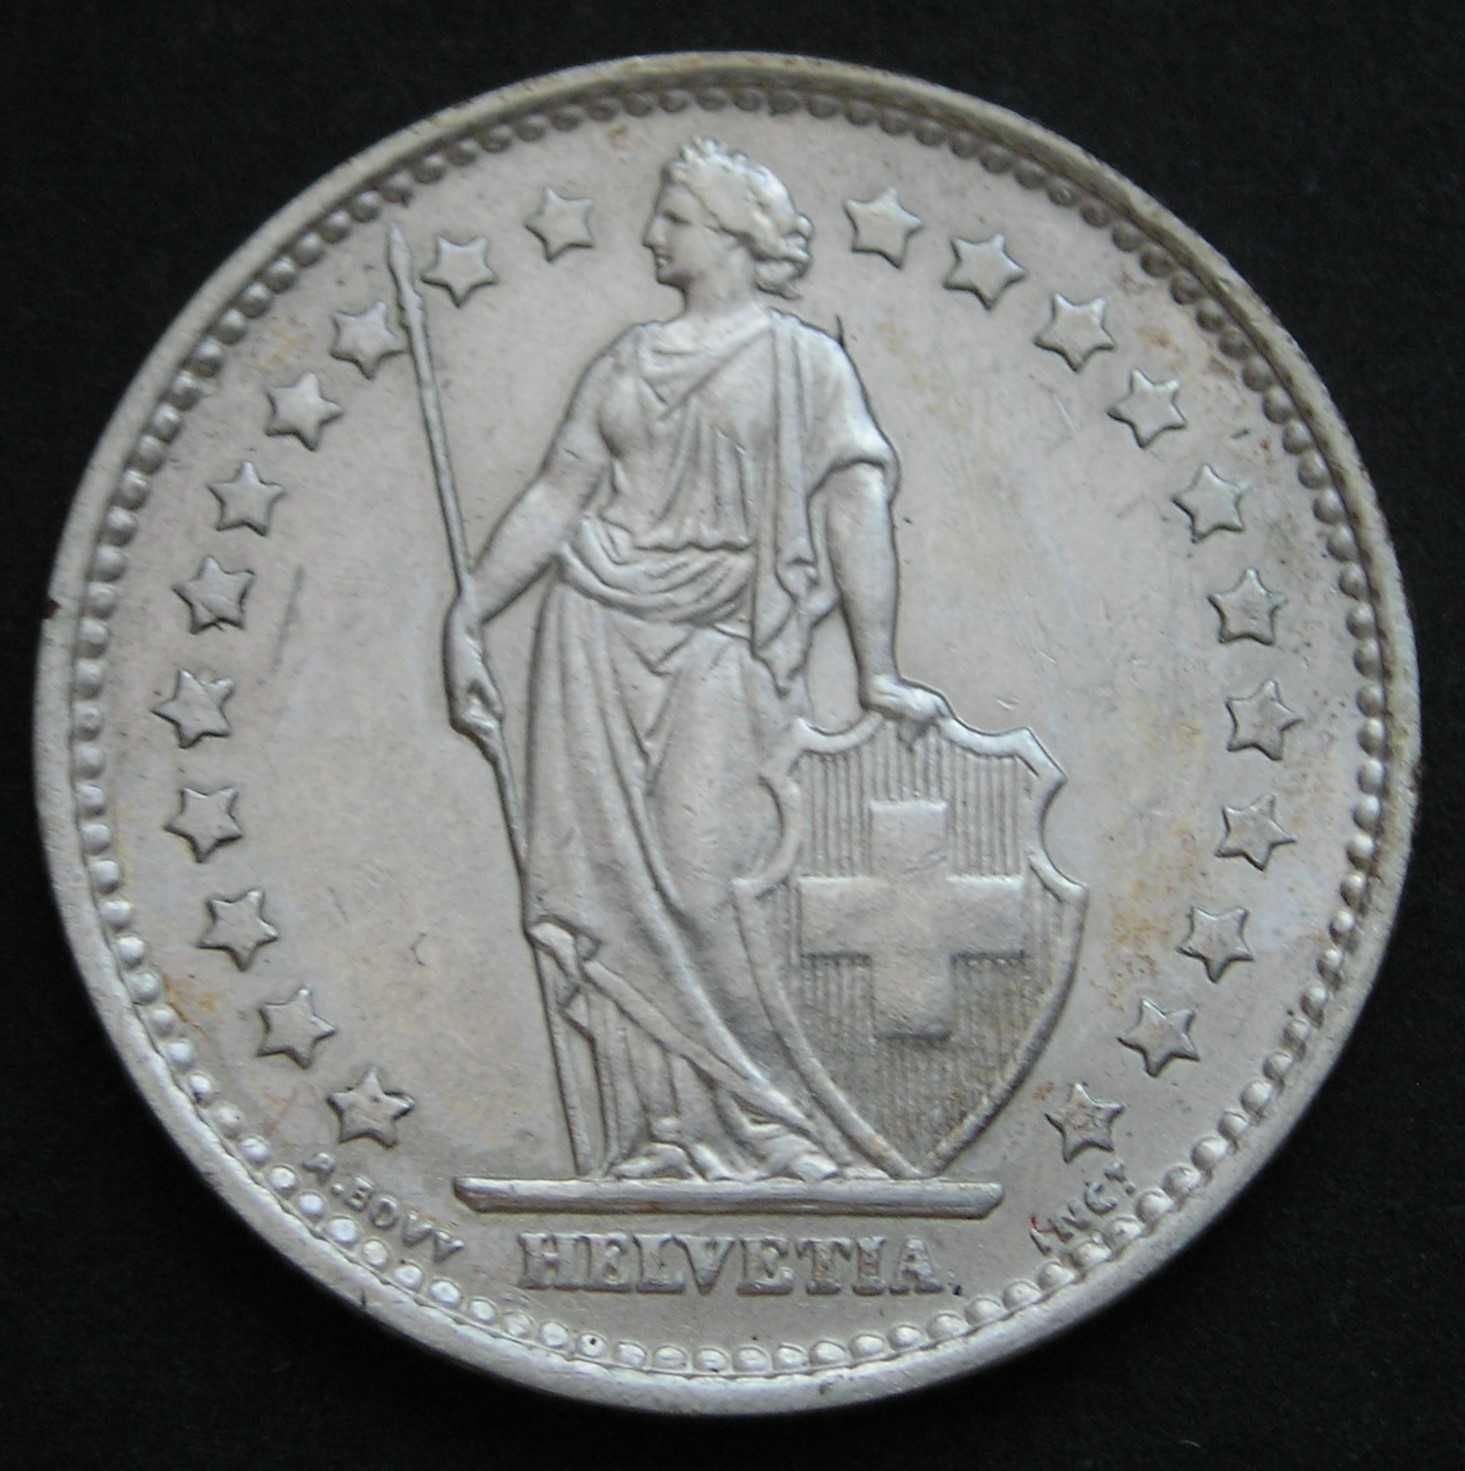 Szwajcaria 1 frank 1967 - srebro - stan menniczy -